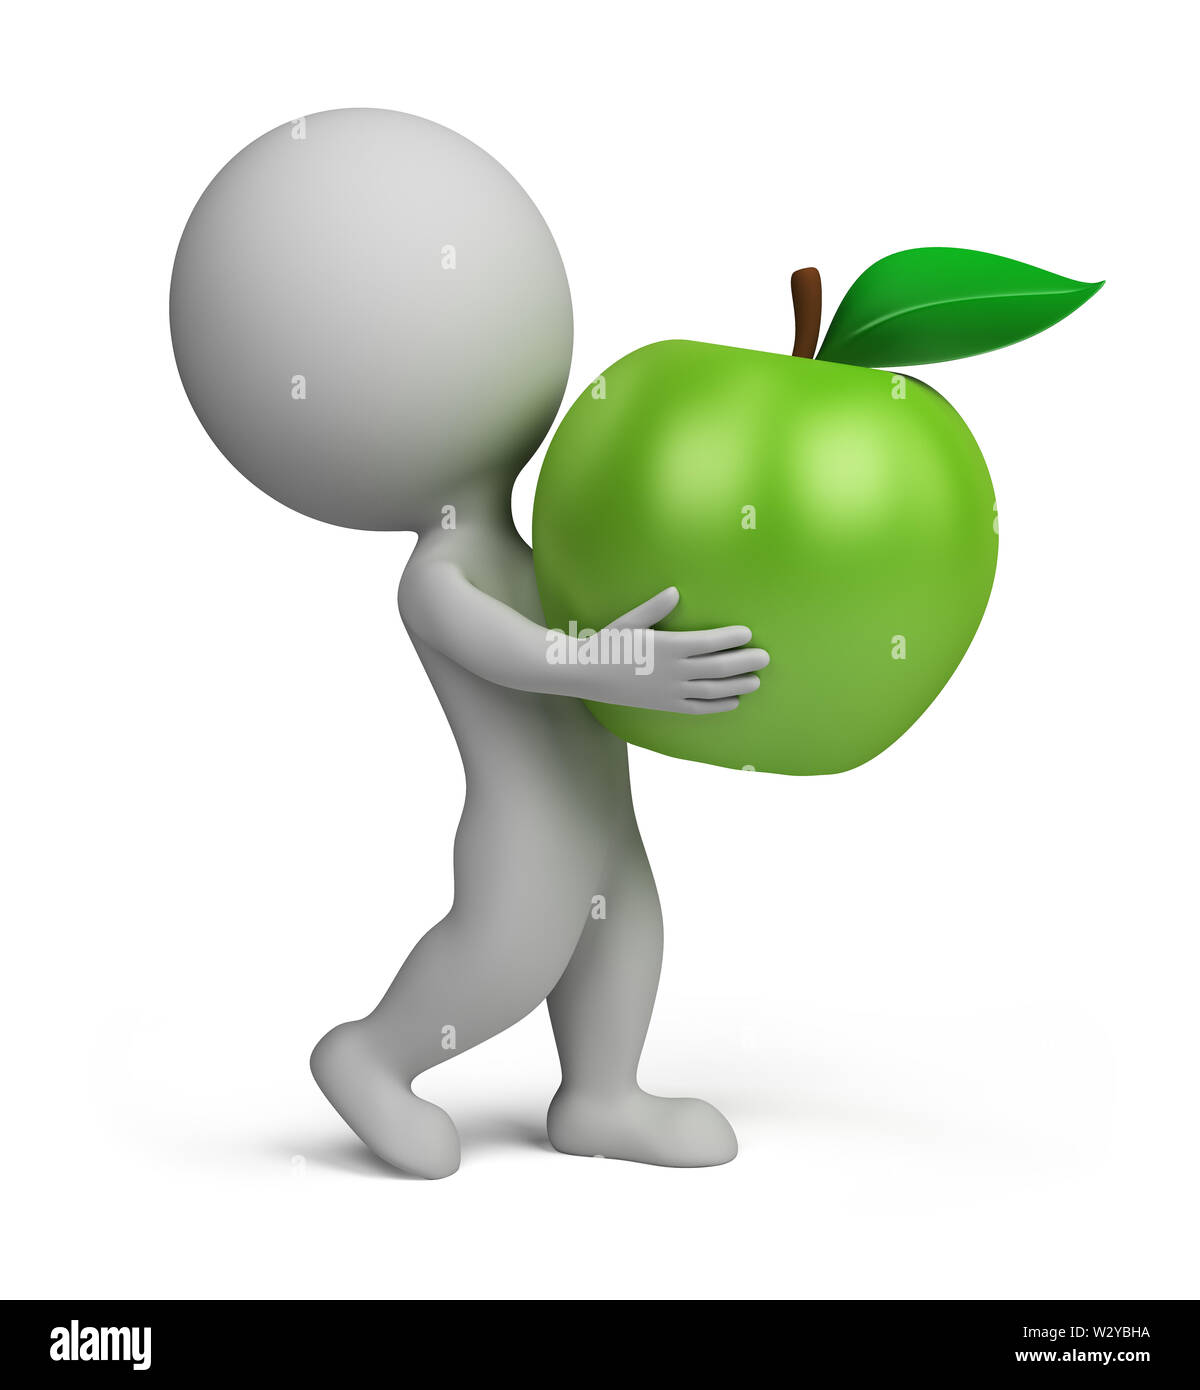 3d piccola persona che porta una mela verde. Immagine 3d. Isolato sullo sfondo bianco. Foto Stock